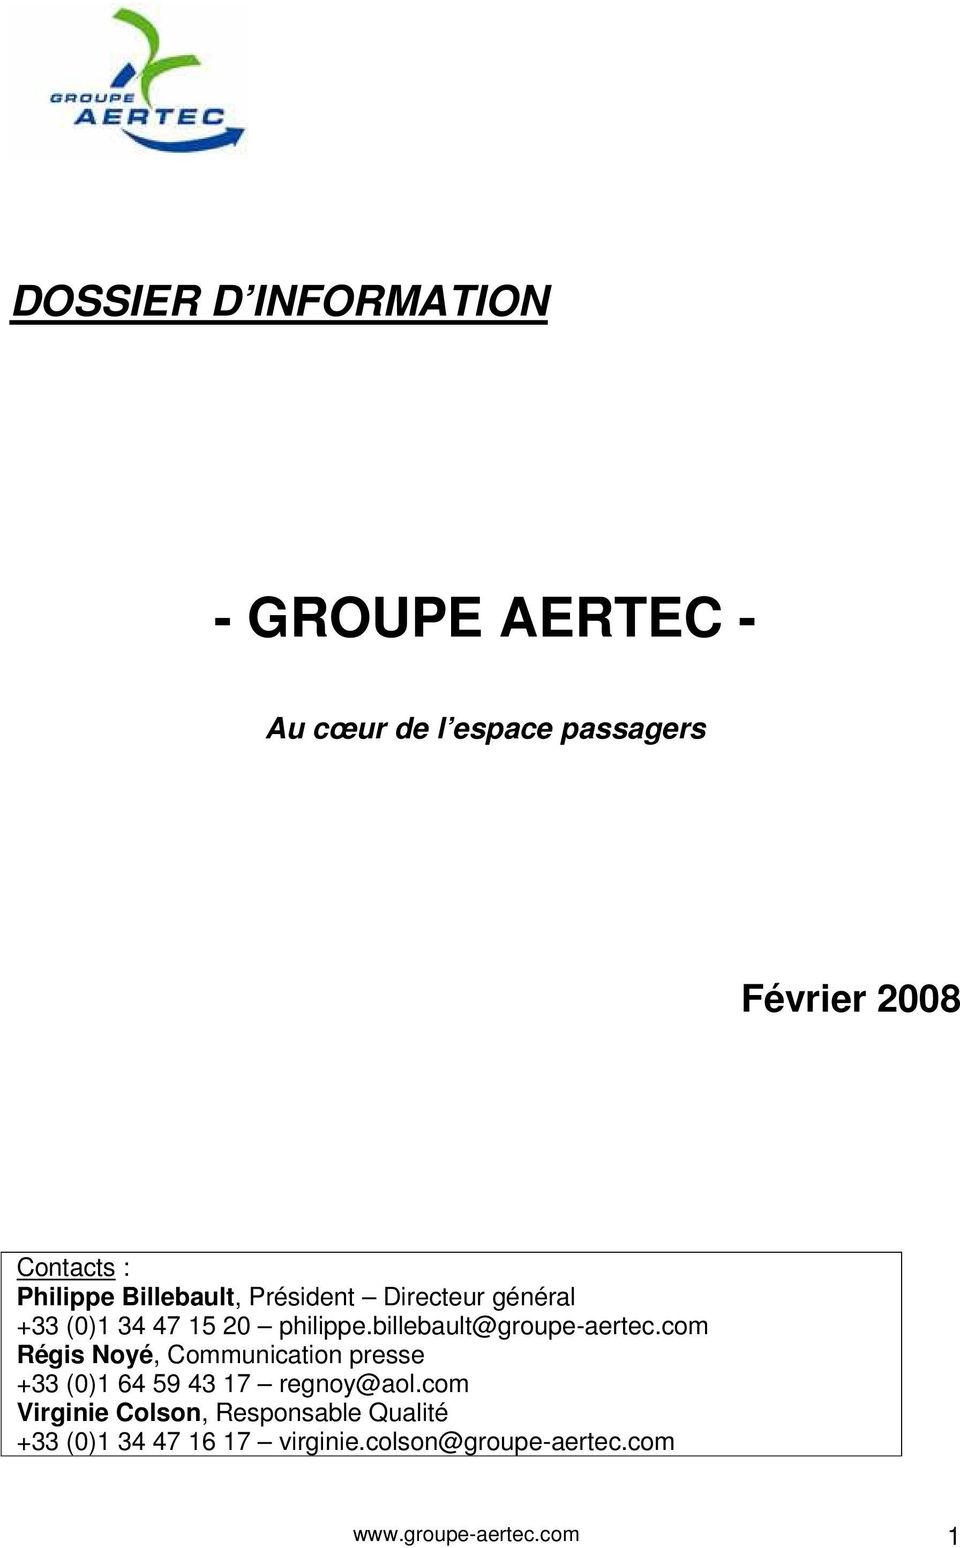 billebault@groupe-aertec.com Régis Noyé, Communication presse +33 (0)1 64 59 43 17 regnoy@aol.